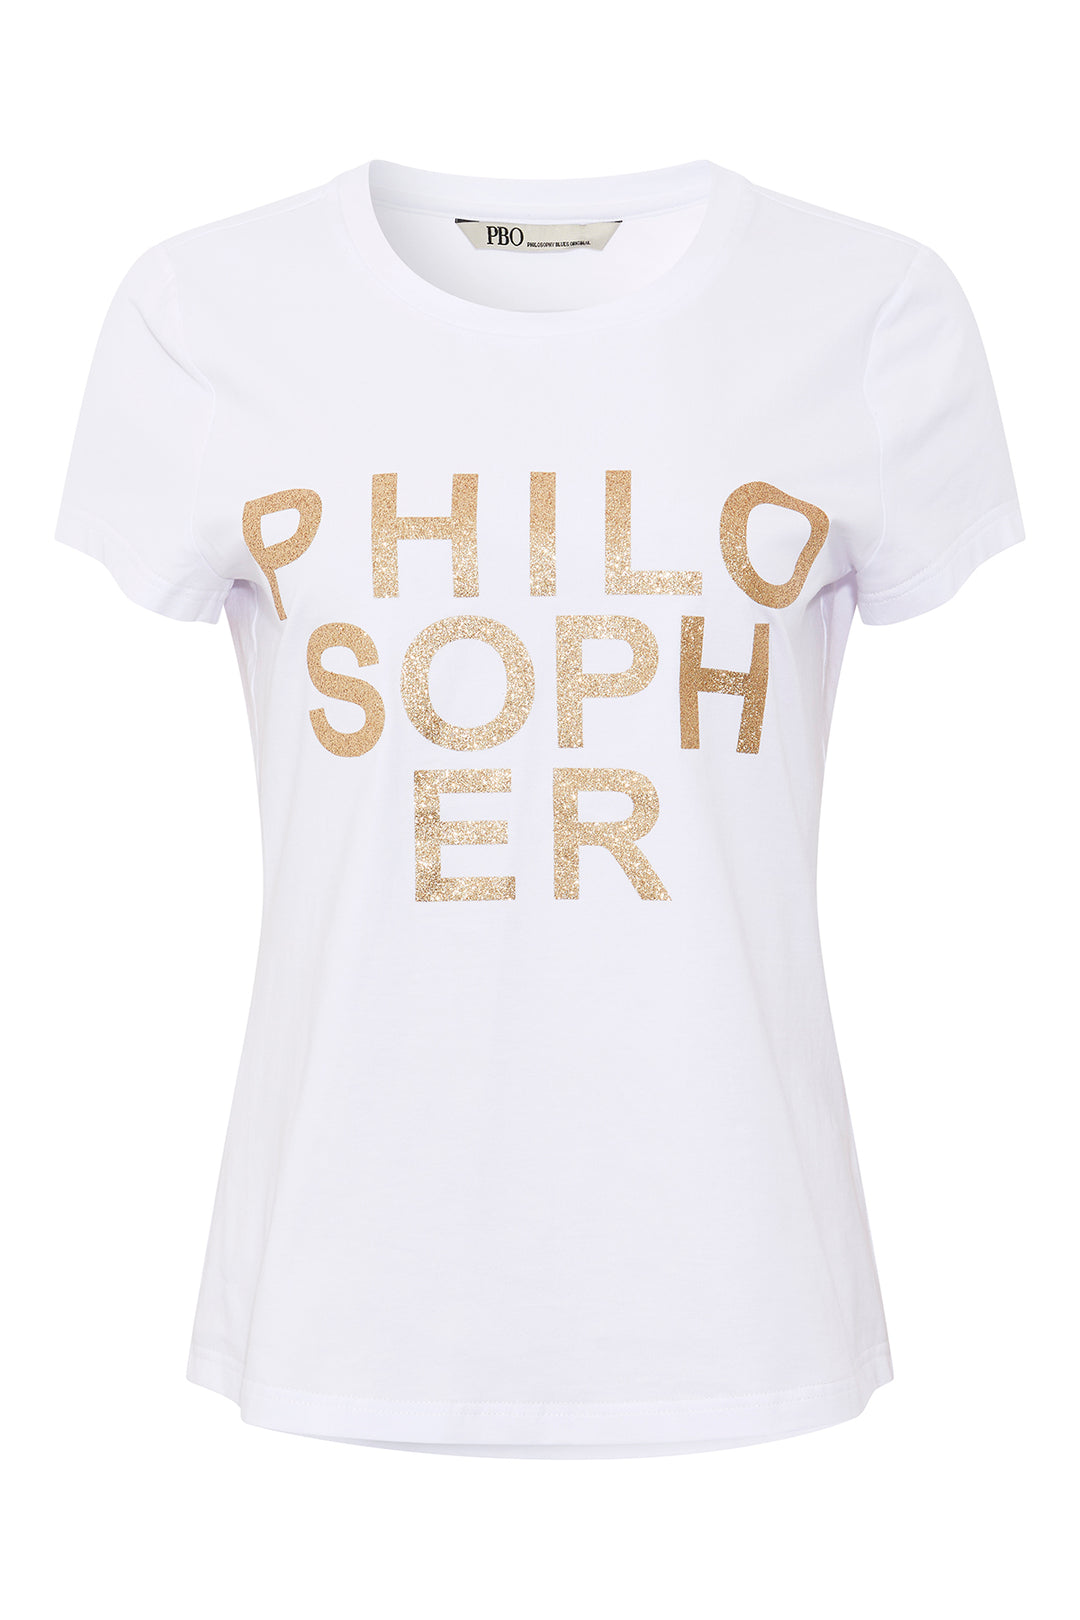 PBO Purves glitter T-shirt T-SHIRTS 01 White